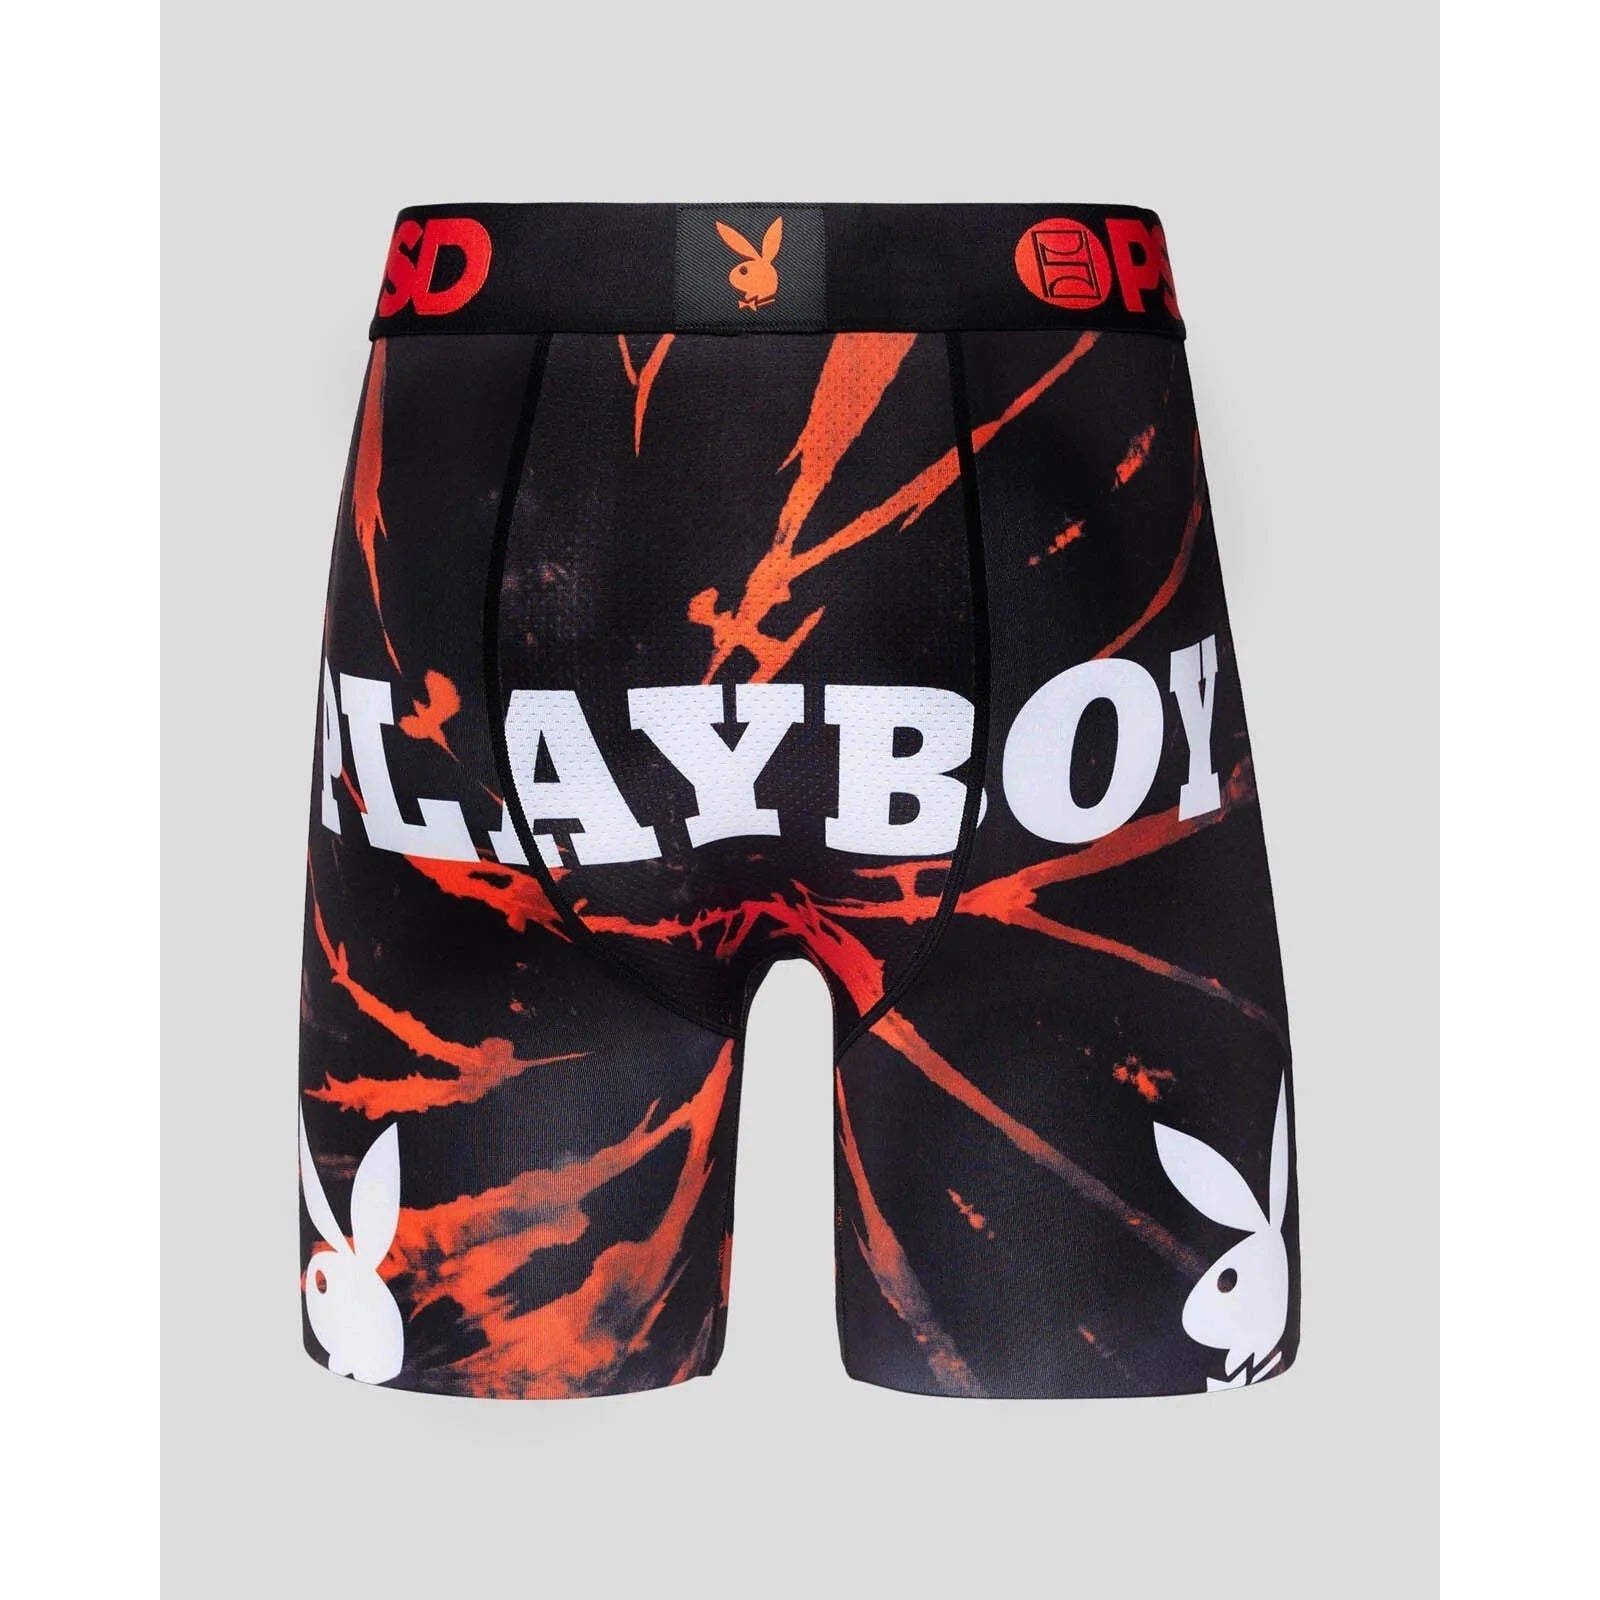 PSD Underwear, Playboy Spiral Dye, Boxer Briefs